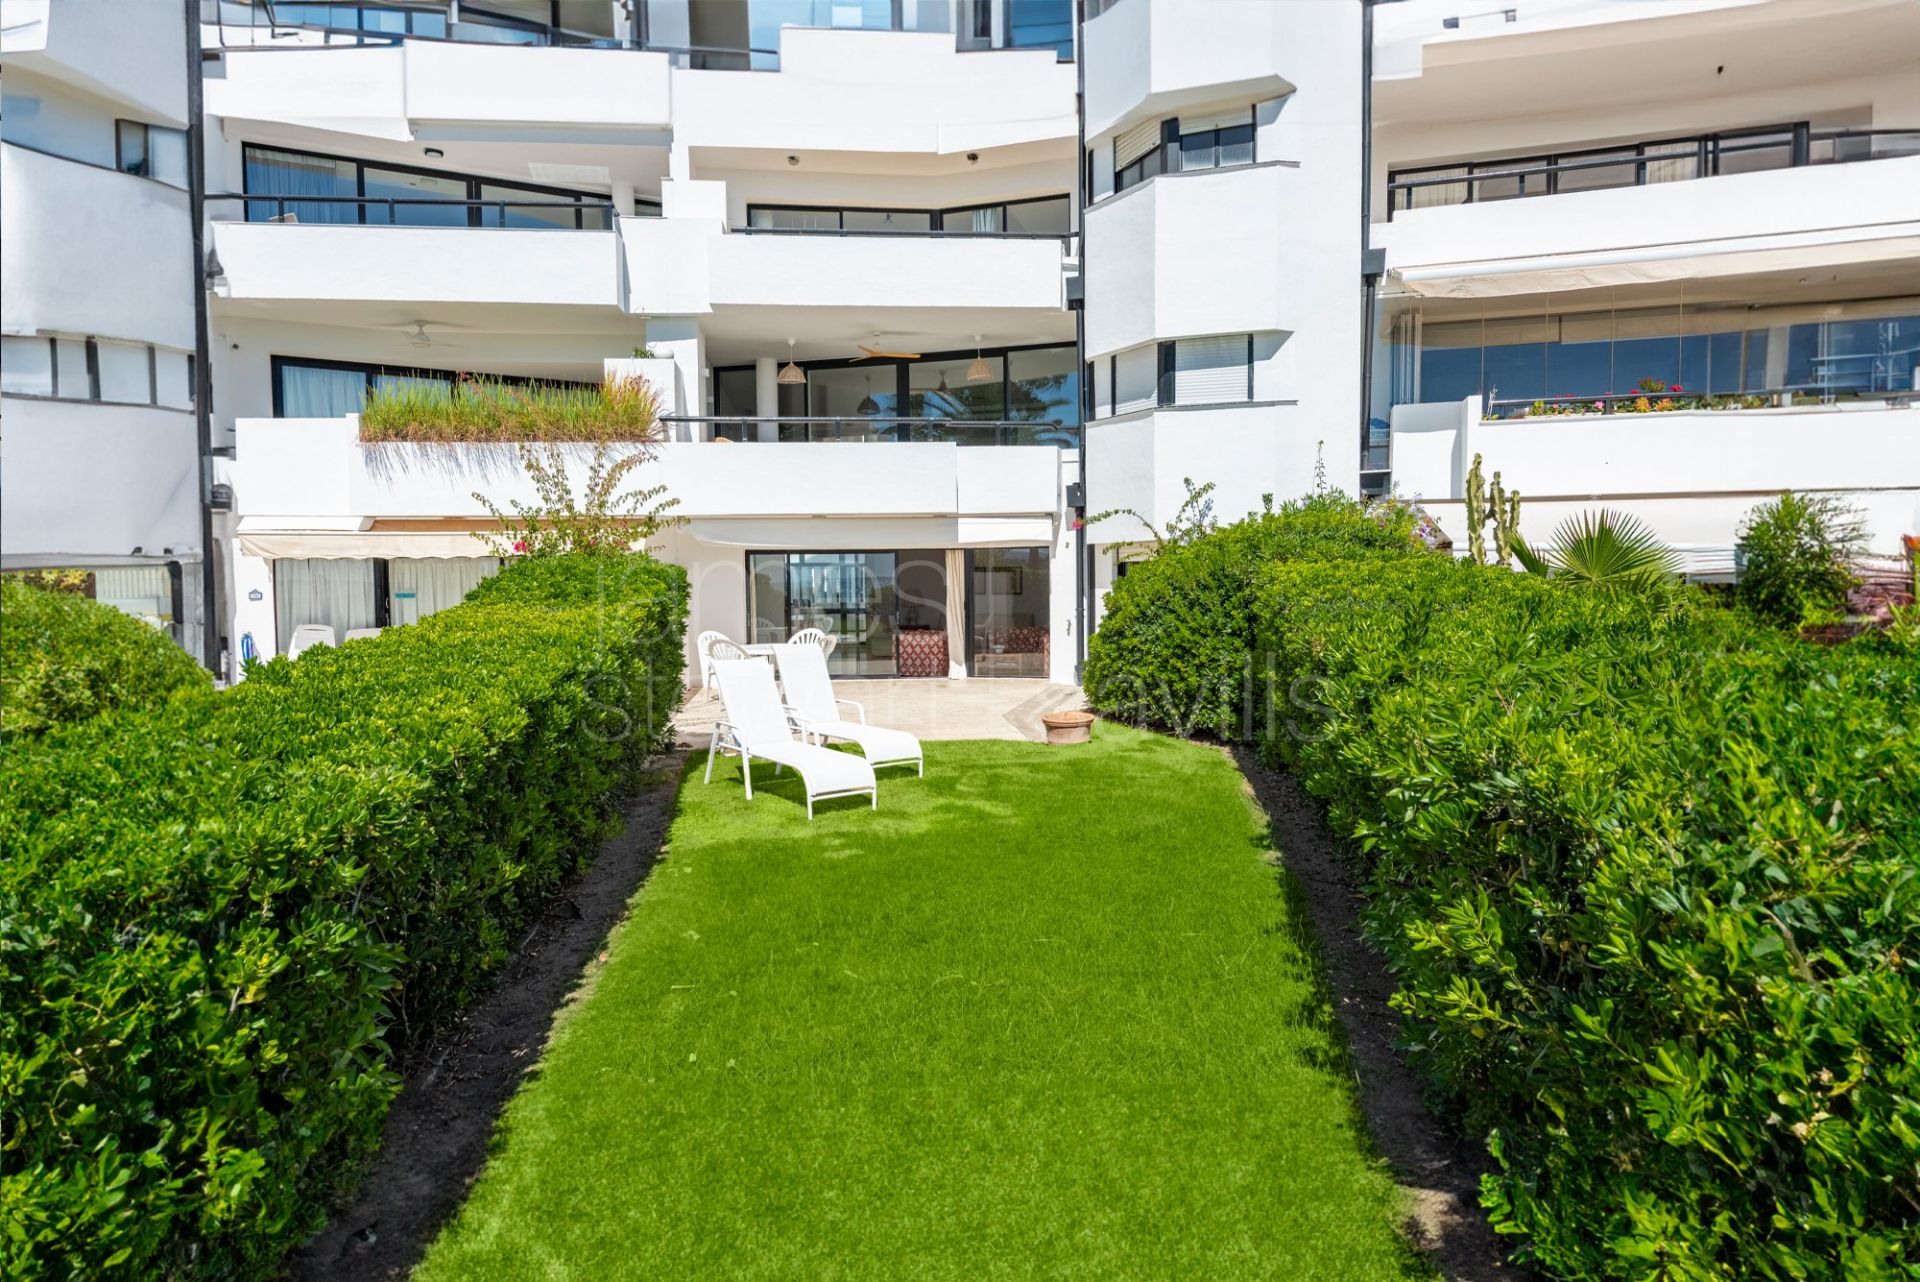 Apartamento de 4 dormitorios con jardín frente al mar Mediterráneo y el Peñón de Gibraltar